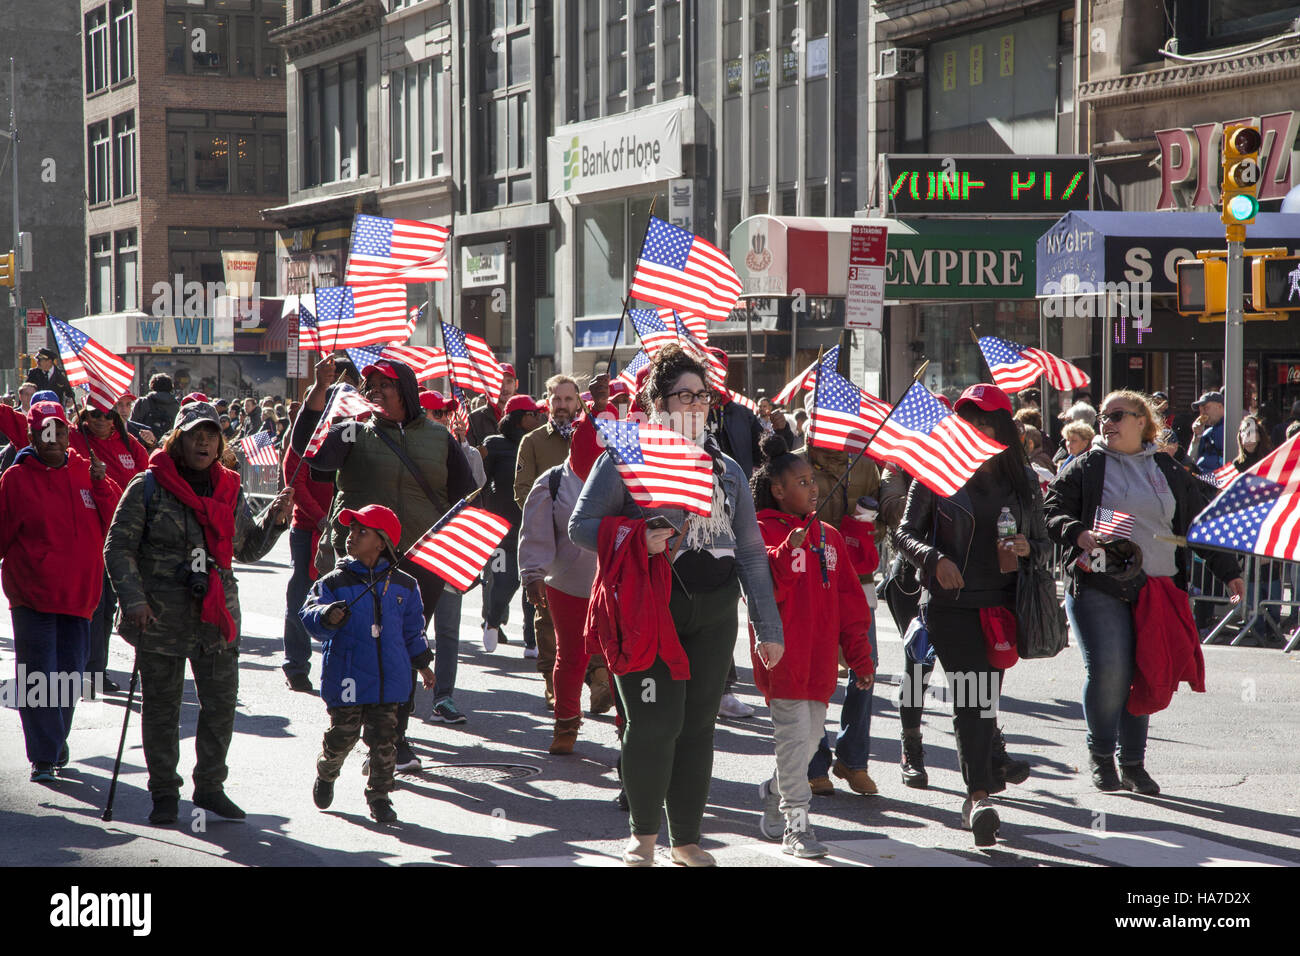 Veterani parata del giorno; anche noto come America's Parade; marche fino la Quinta Avenue in New York City. Foto Stock